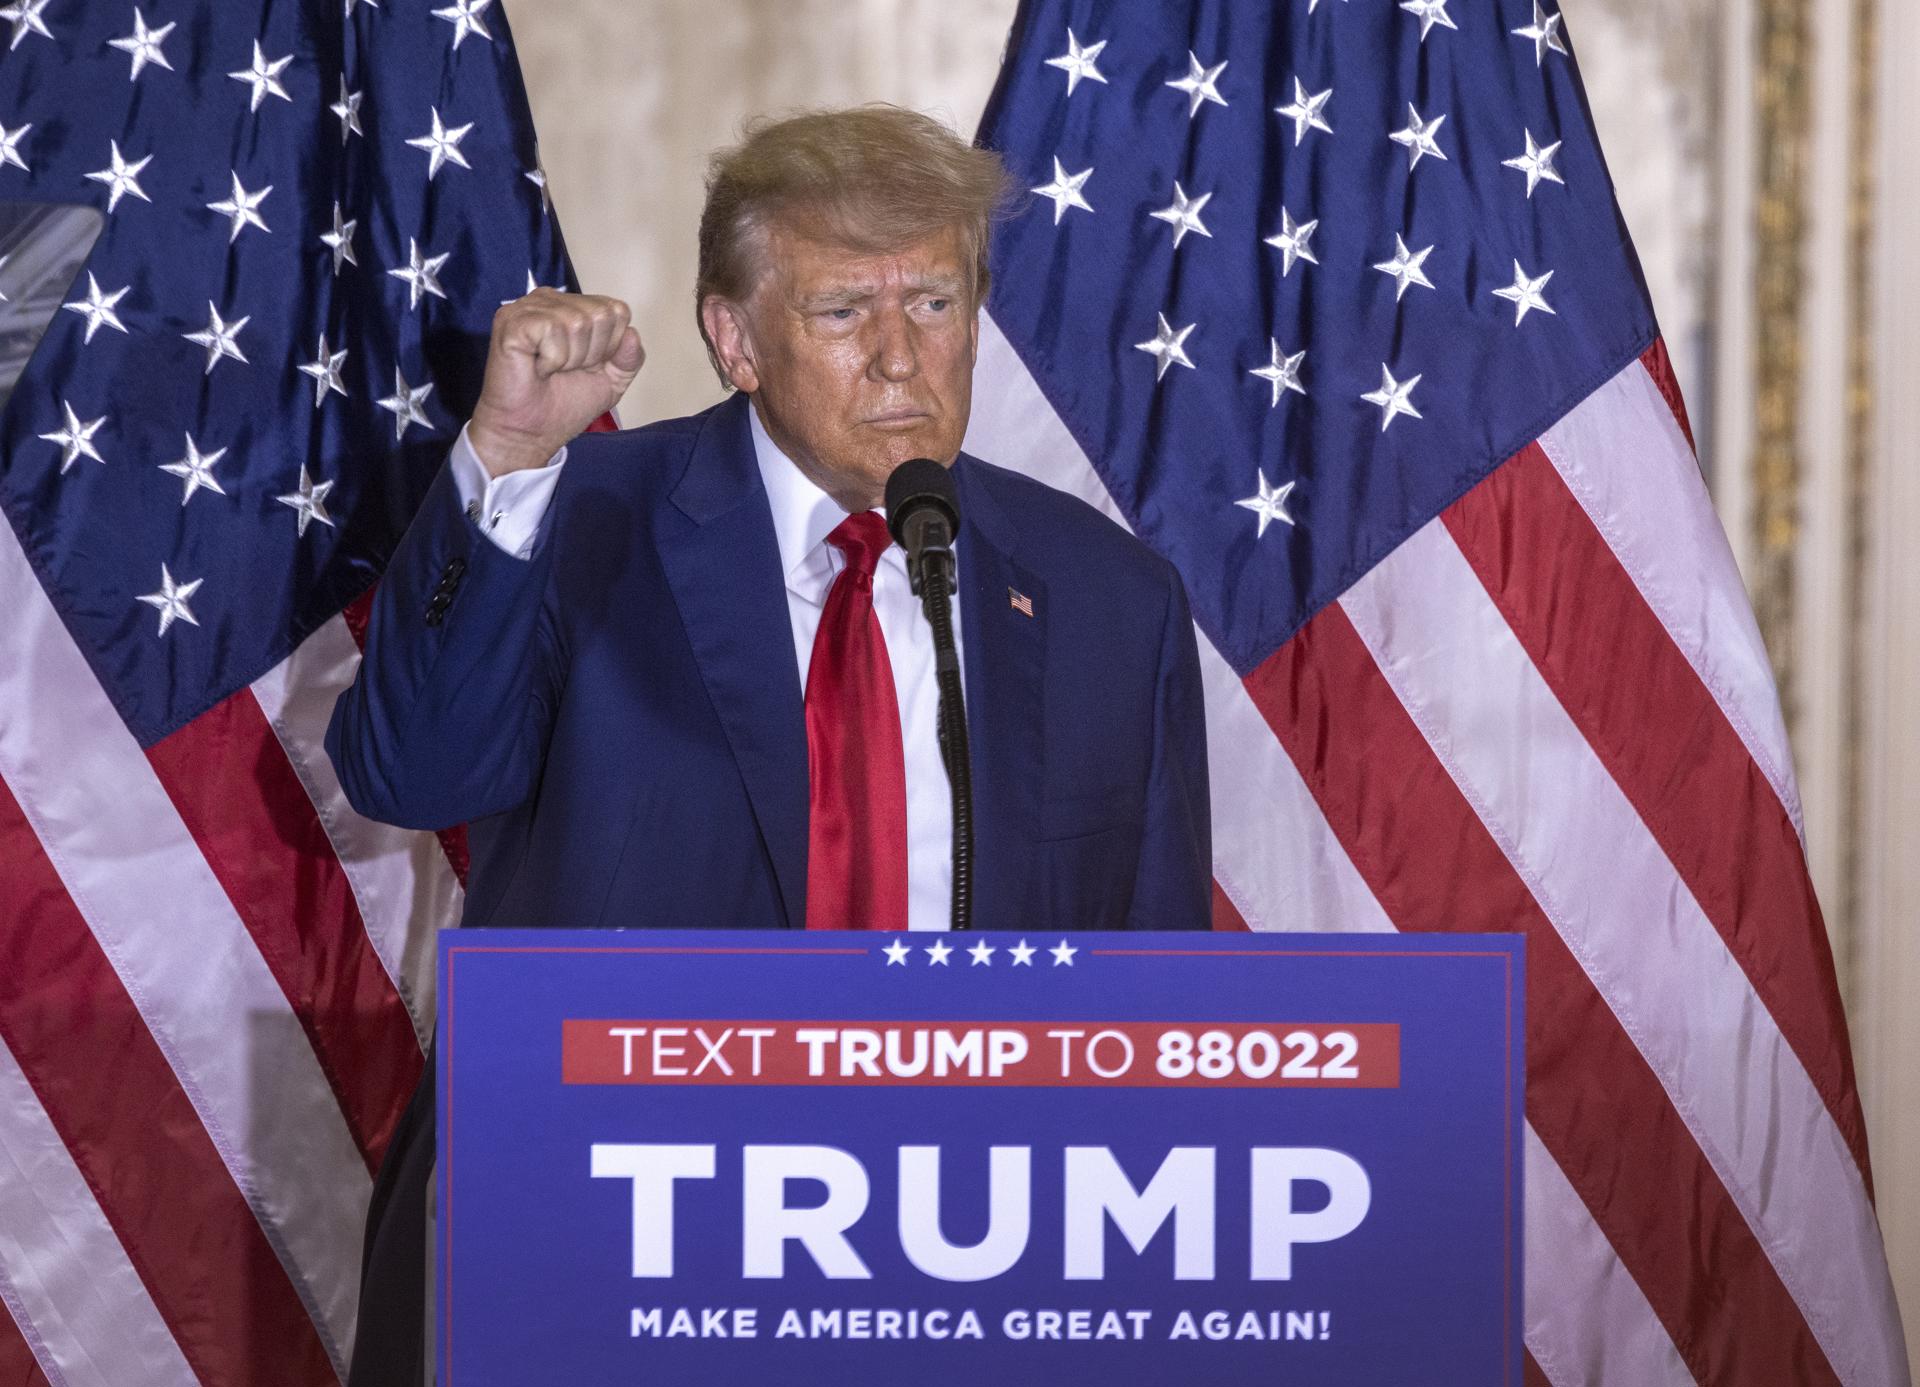 Trump respon amb victimisme a la imputació: "Volen interferir en les eleccions"